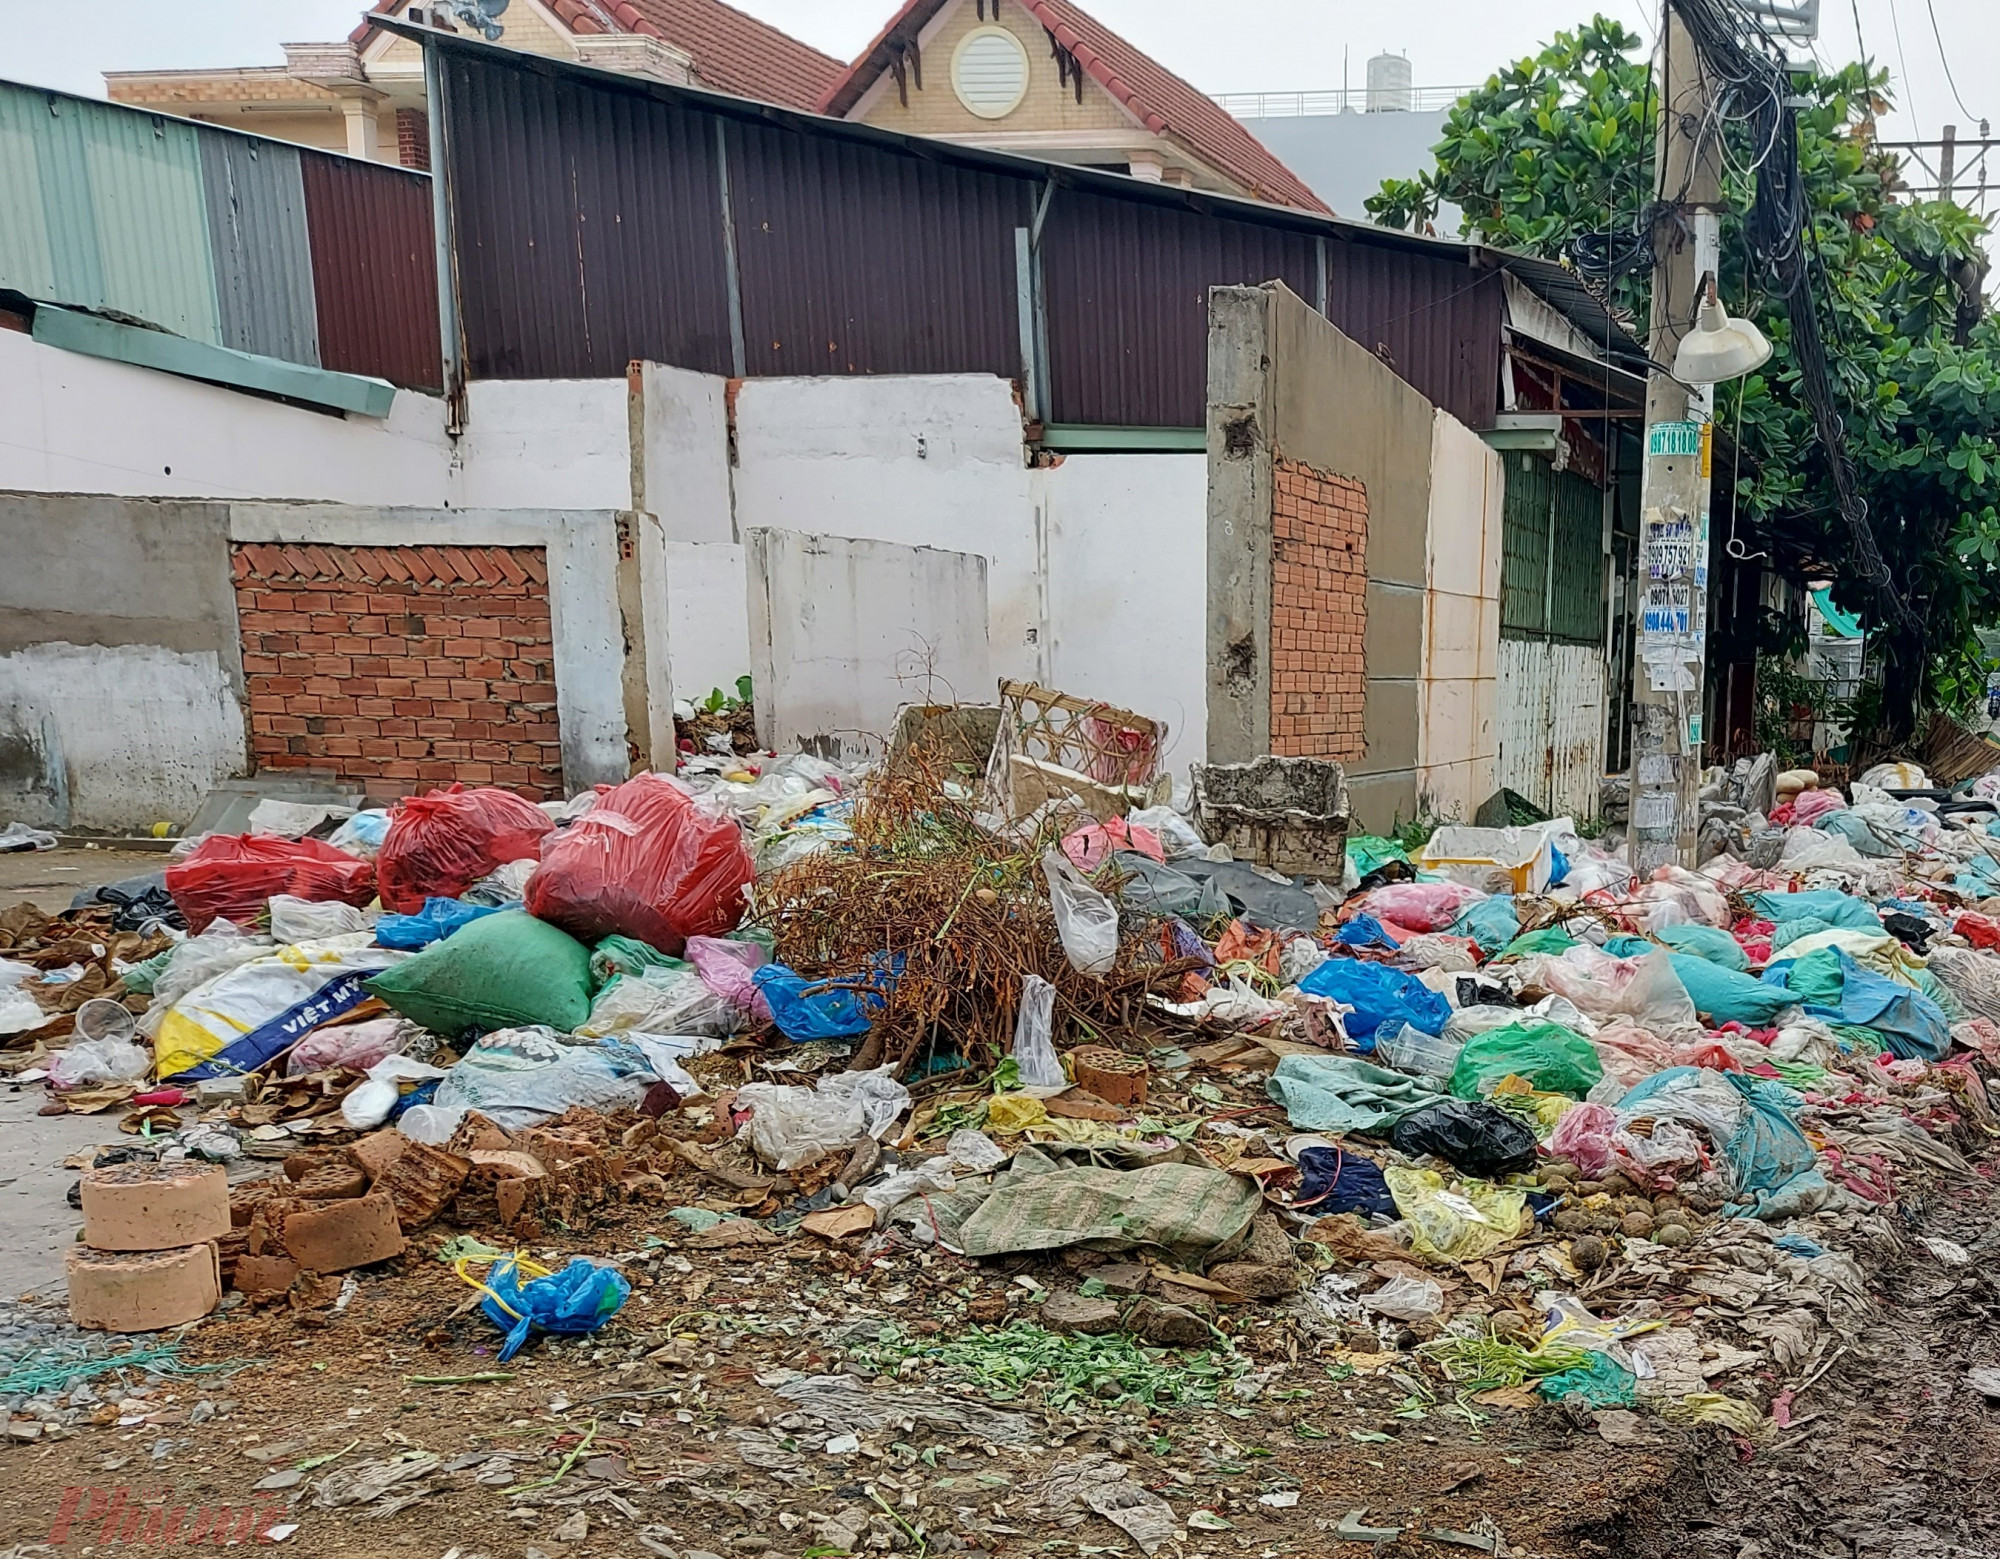 Căn nhà bỏ hoang ở đầu hẻm 236 An Dương Vương thành nơi tập kết rác.